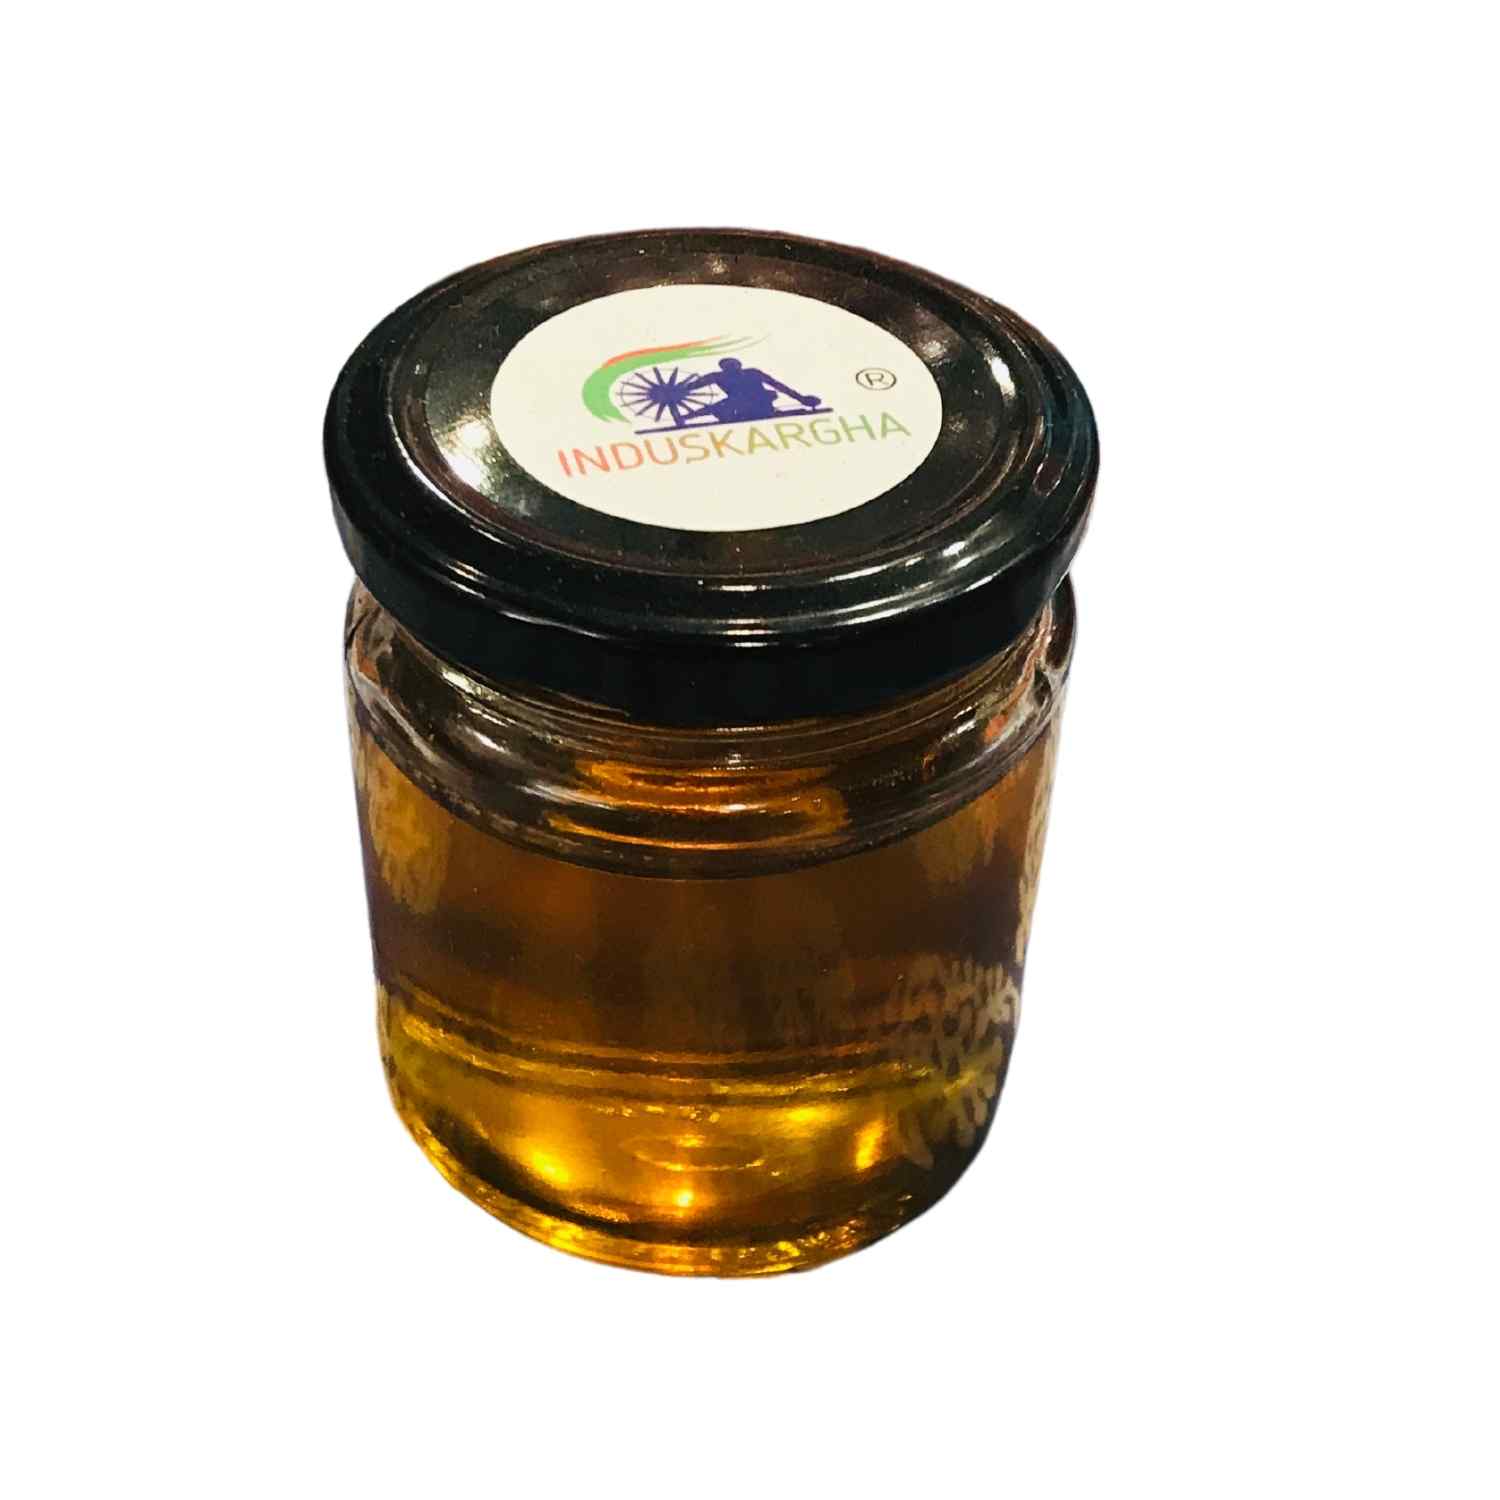 Multifloral honey